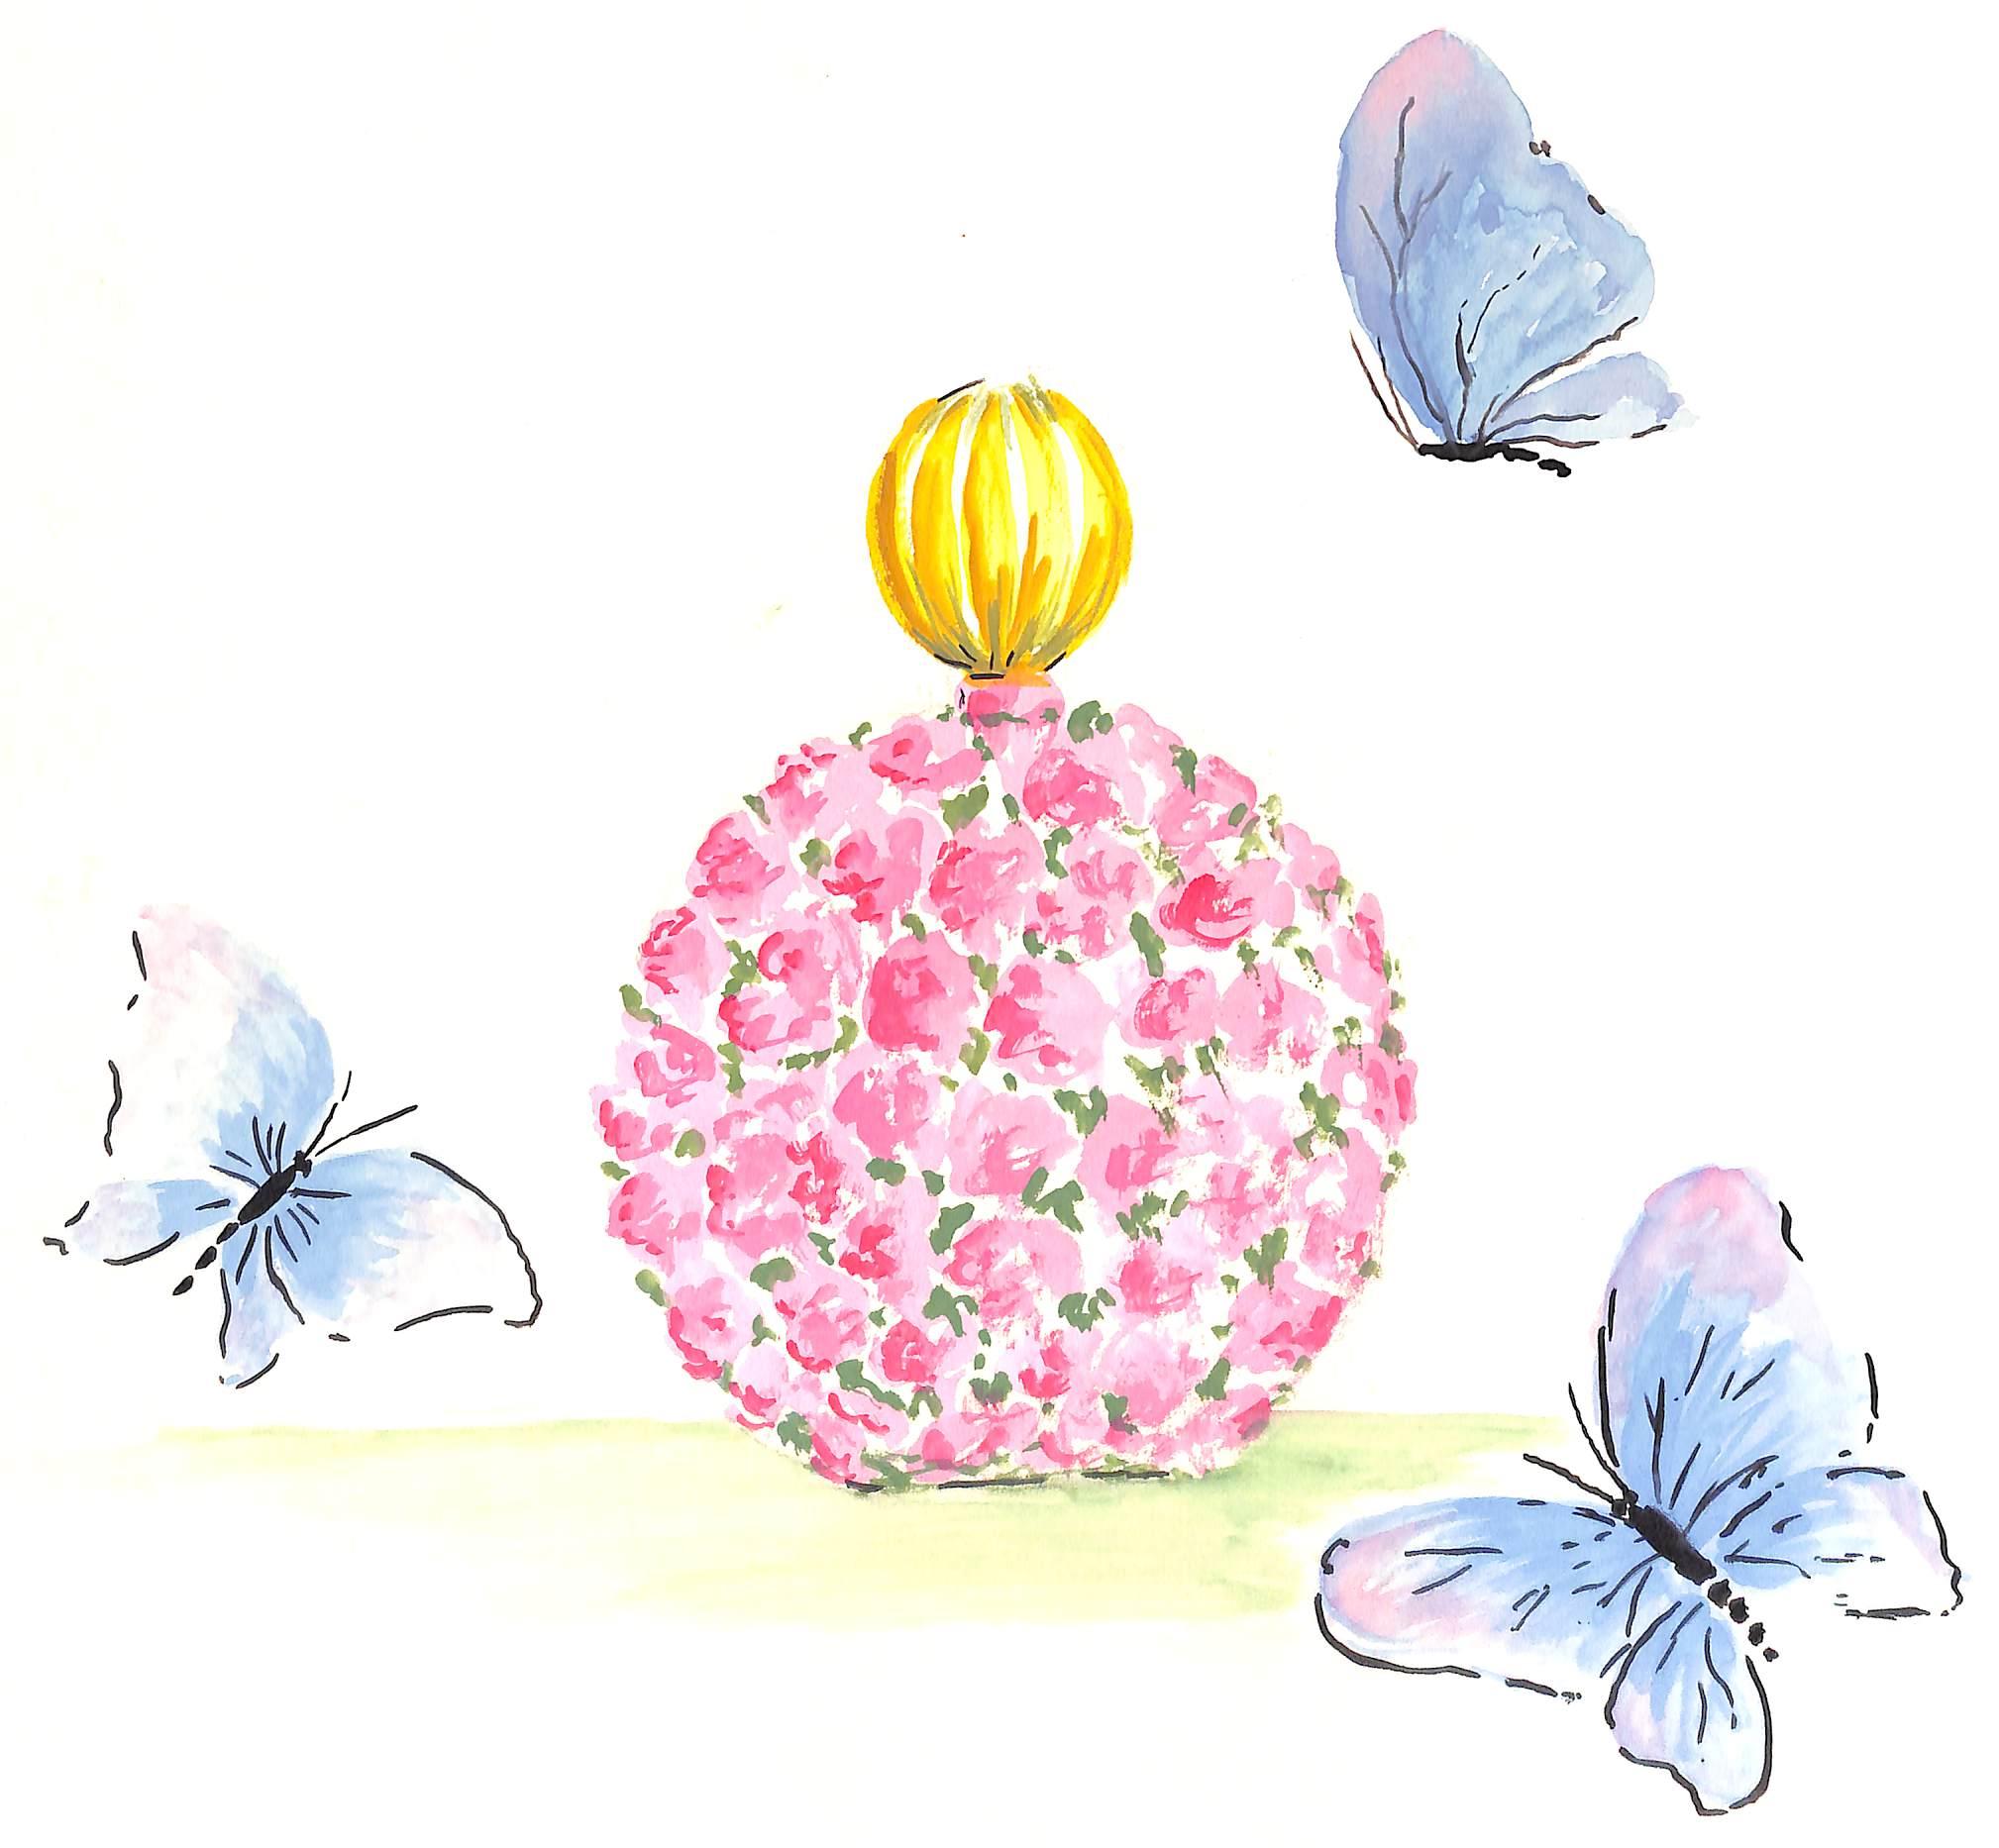 "Lanvin Paris Bouteille de parfum florale avec papillons tournant vers un bouquet rose" - Art de Alexander Warren Montel